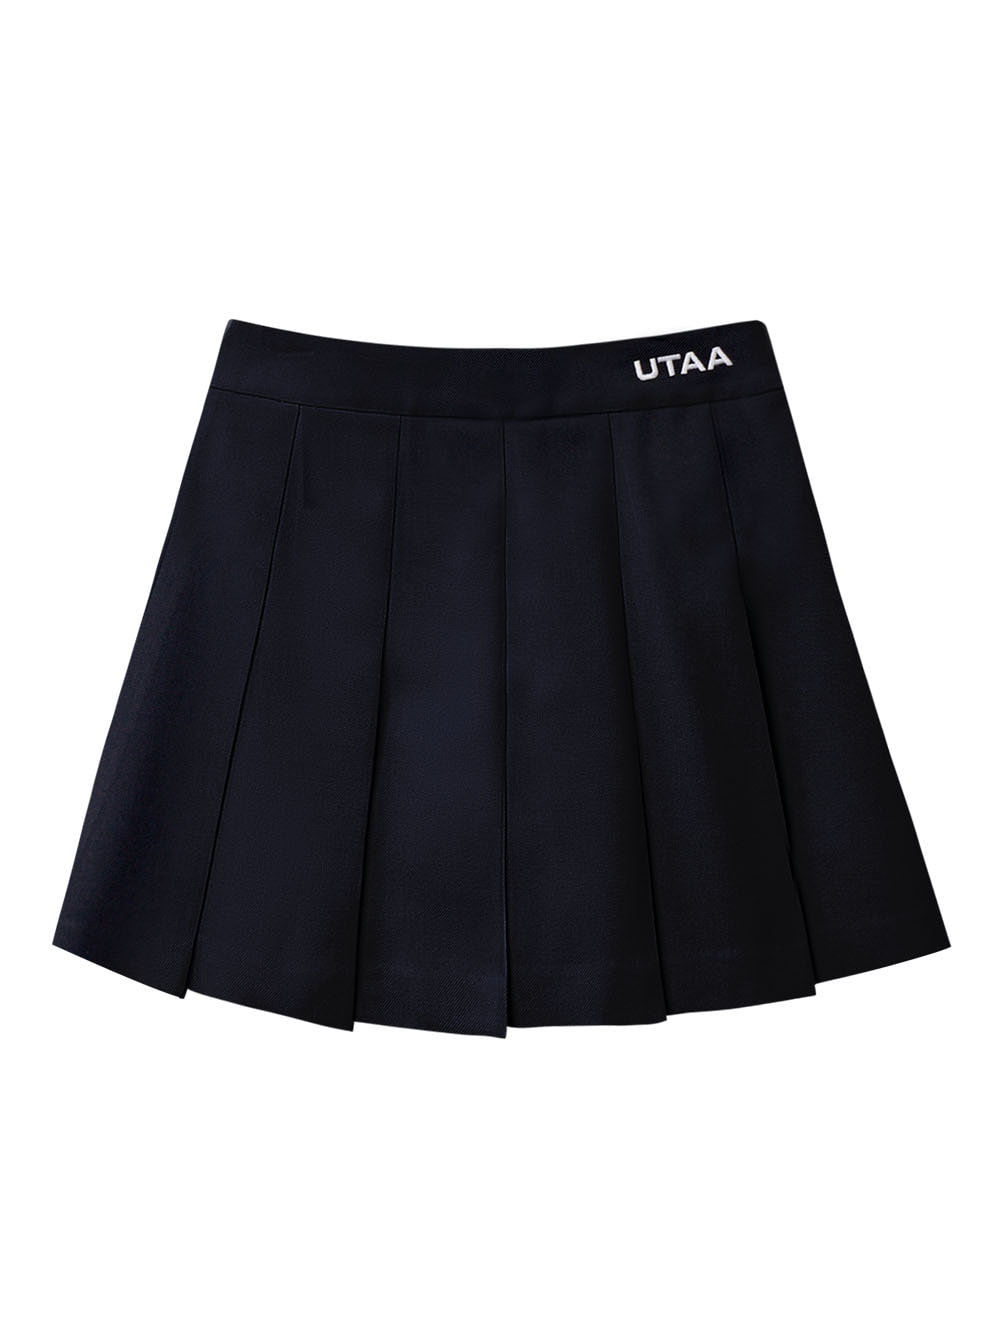 UTAA Hidden Logo Basic Fan Skirt : Dark Navy (UC1SKF764DA)